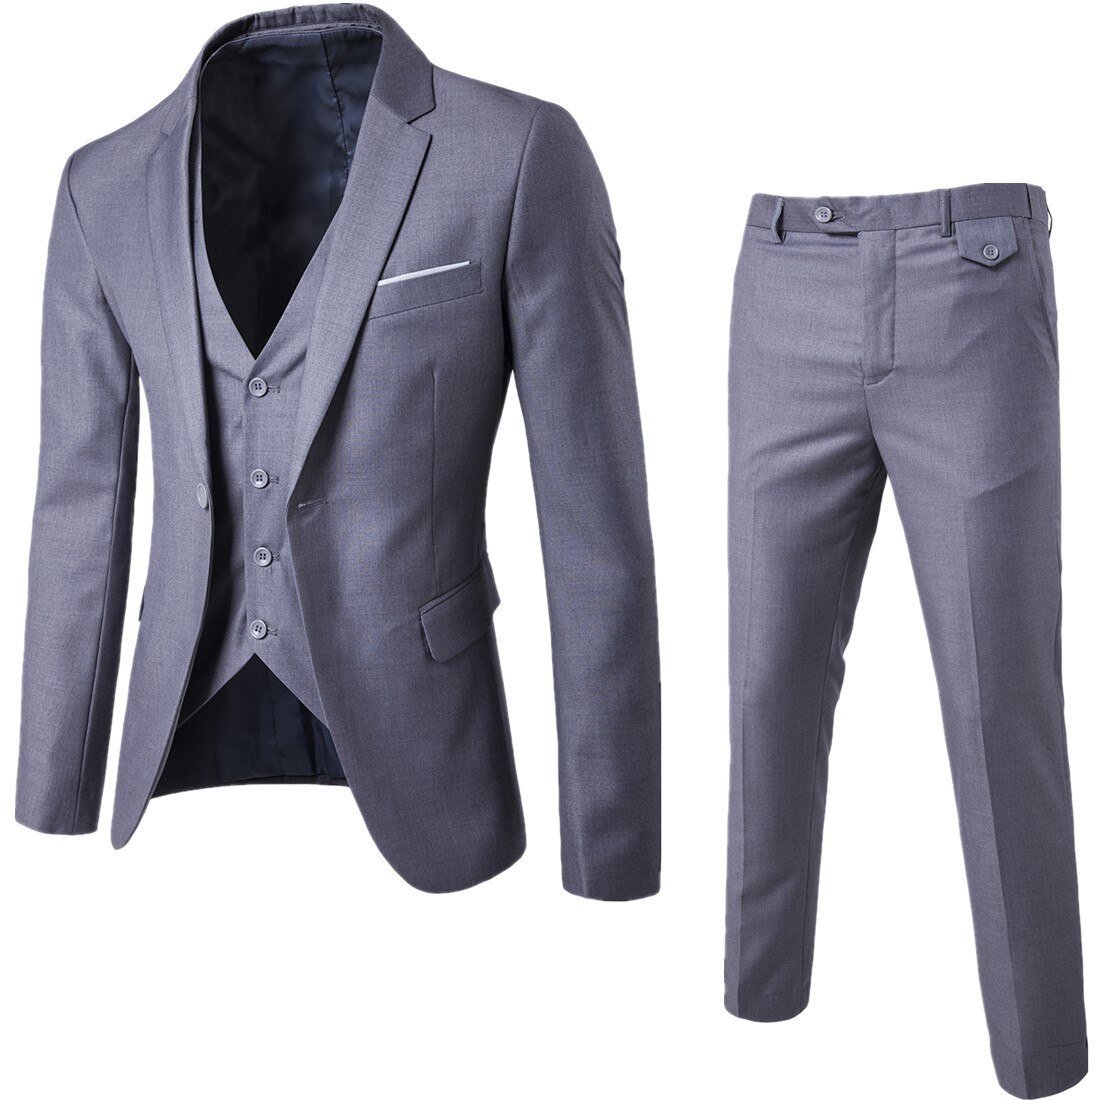 Men-Classic-3piece-Set-Suit-Wedding-Suits-for-Men-Slim-Suit-Jacket-Pant-Vest-Suit-for-3.jpg